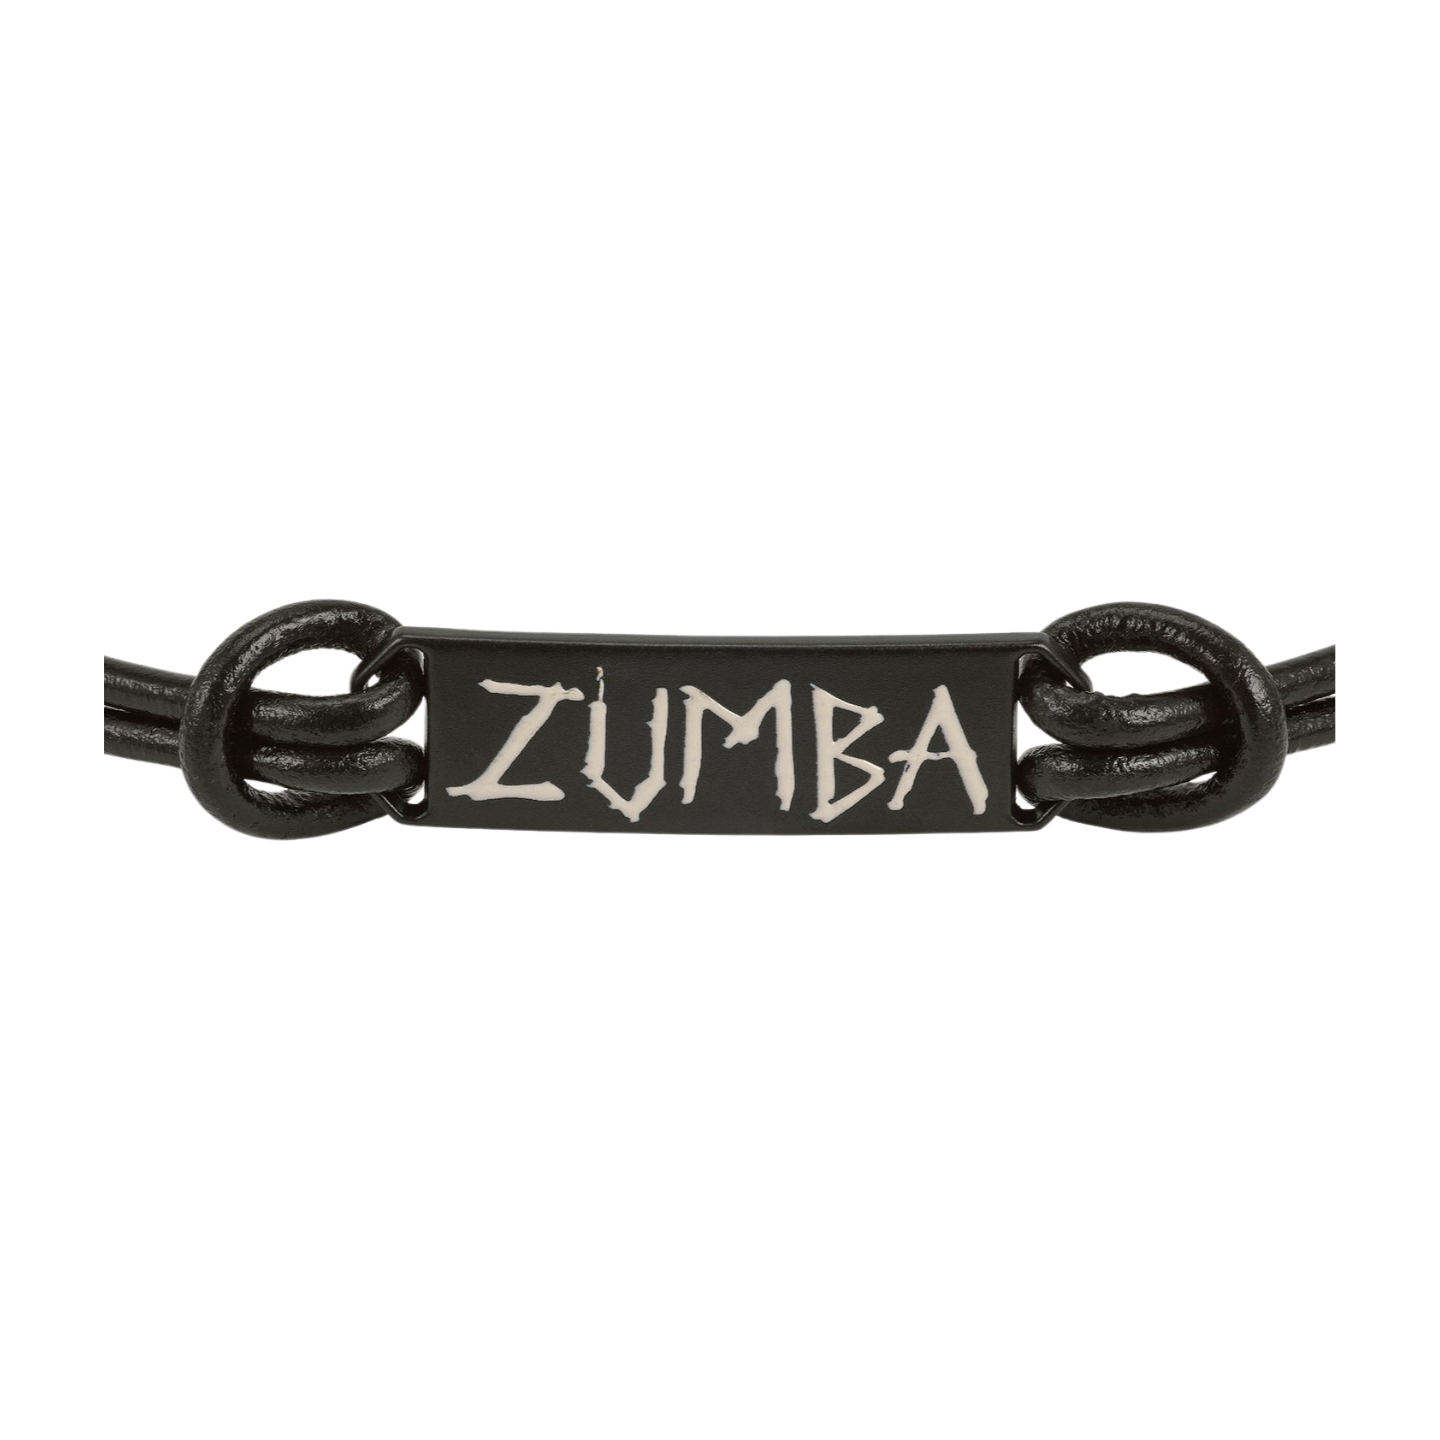 Zumba Fired Up Cord Choker